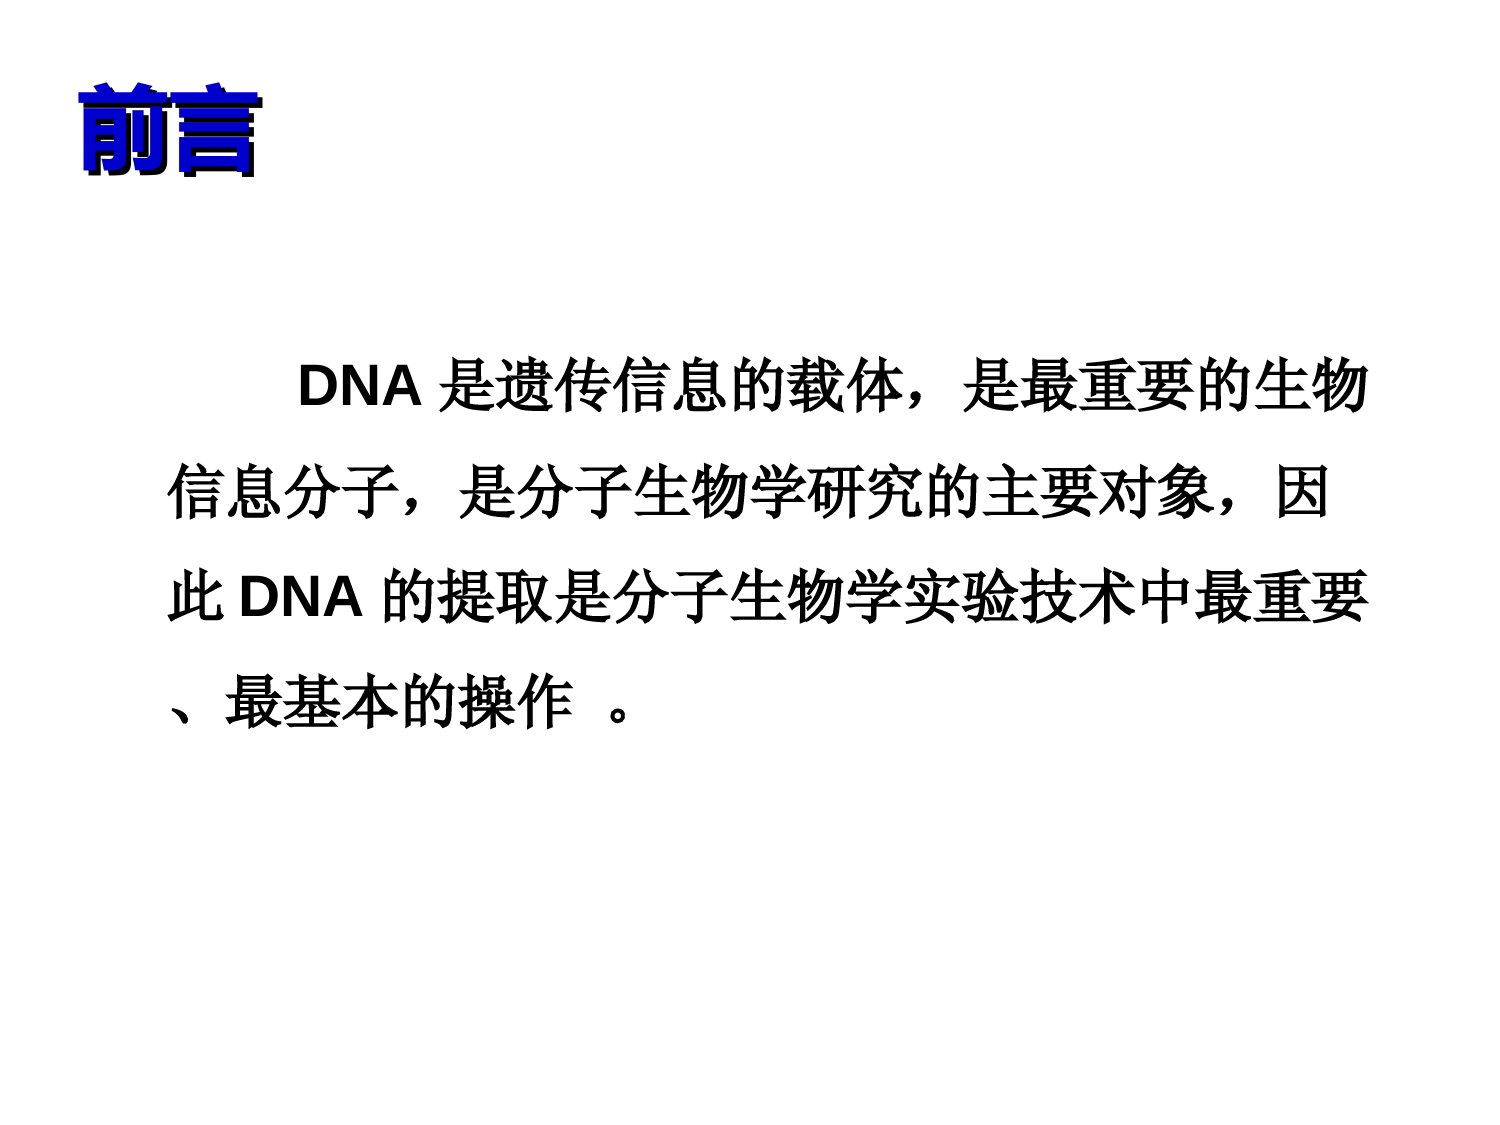 DNA提取及常见问题分析